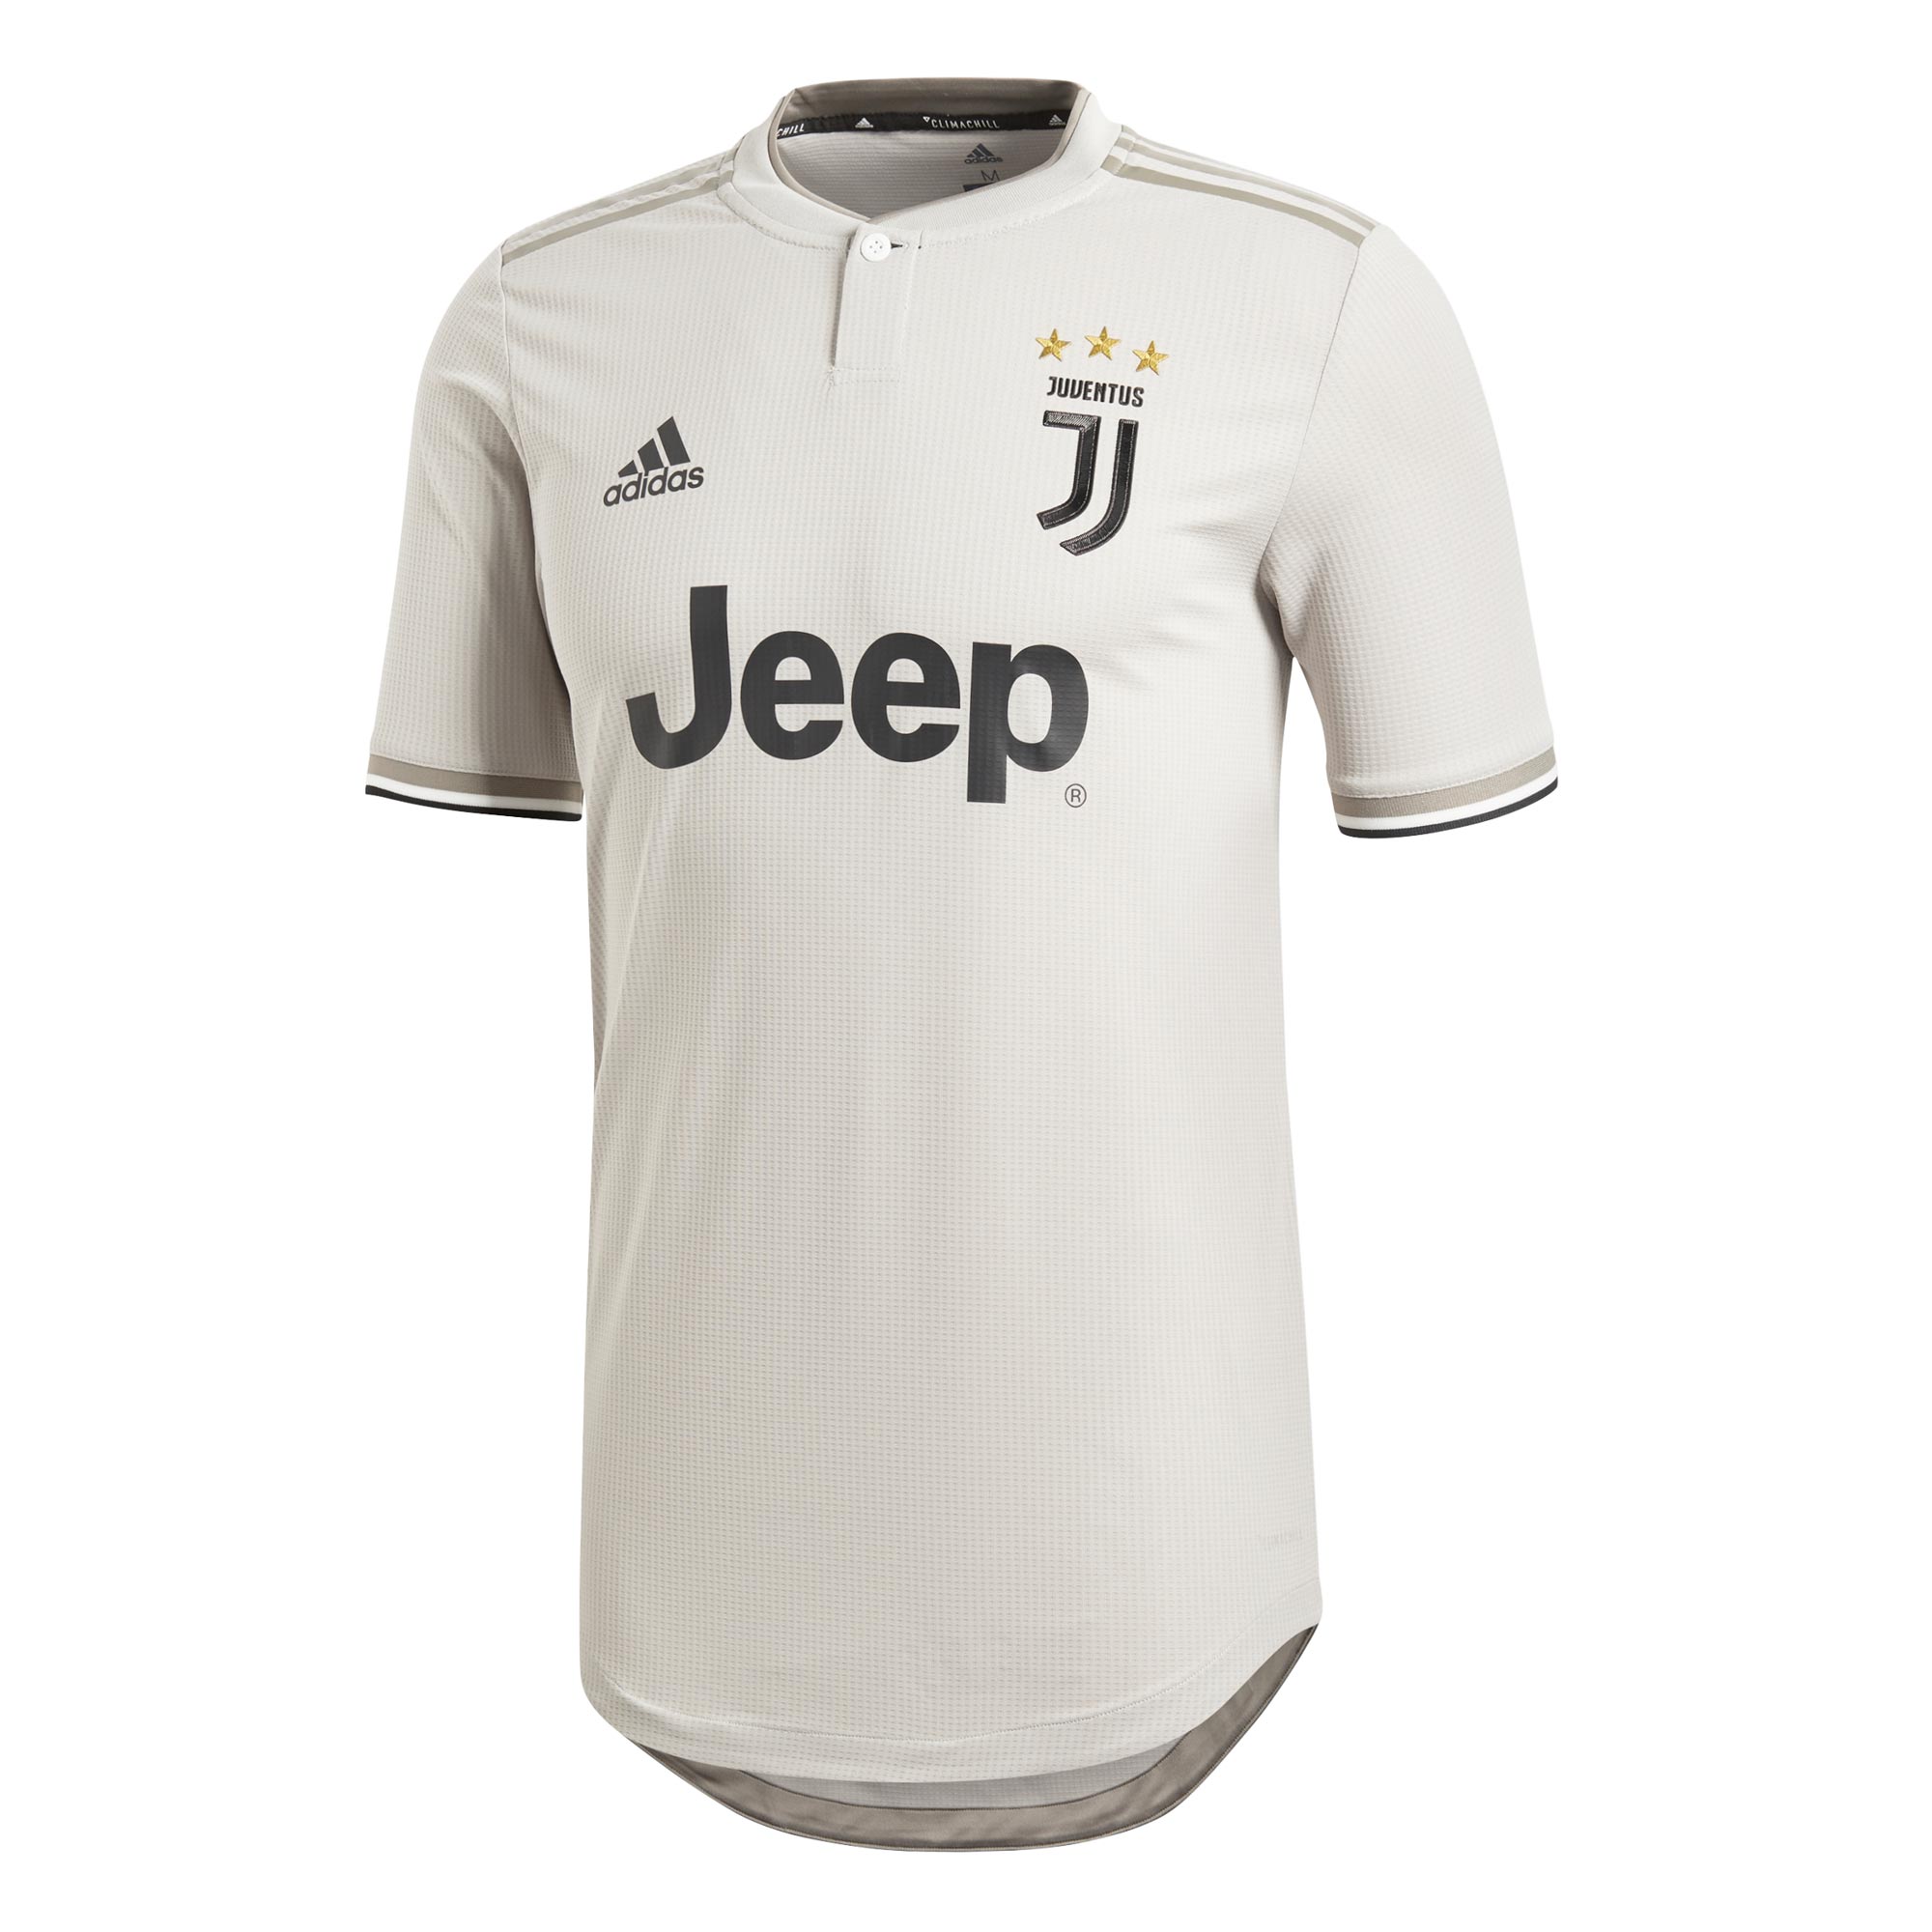 Juventus 18-19 Away Kit Released - Footy Headlines